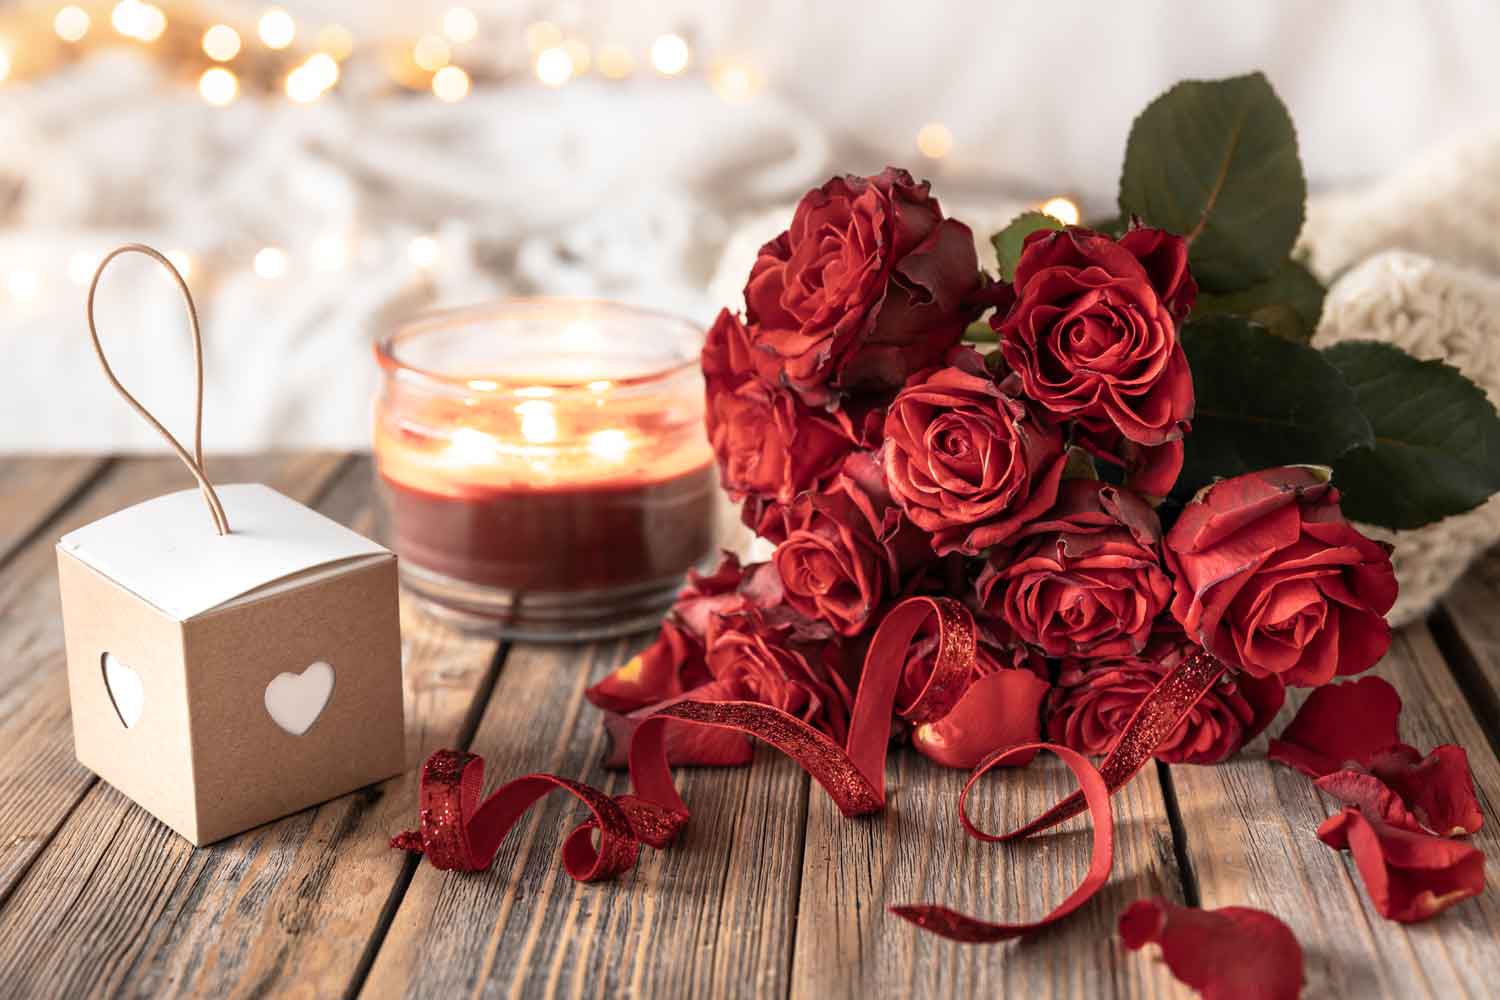 Ramo de flores rojas y detalles decorativos para regalar el día de San Valentín.